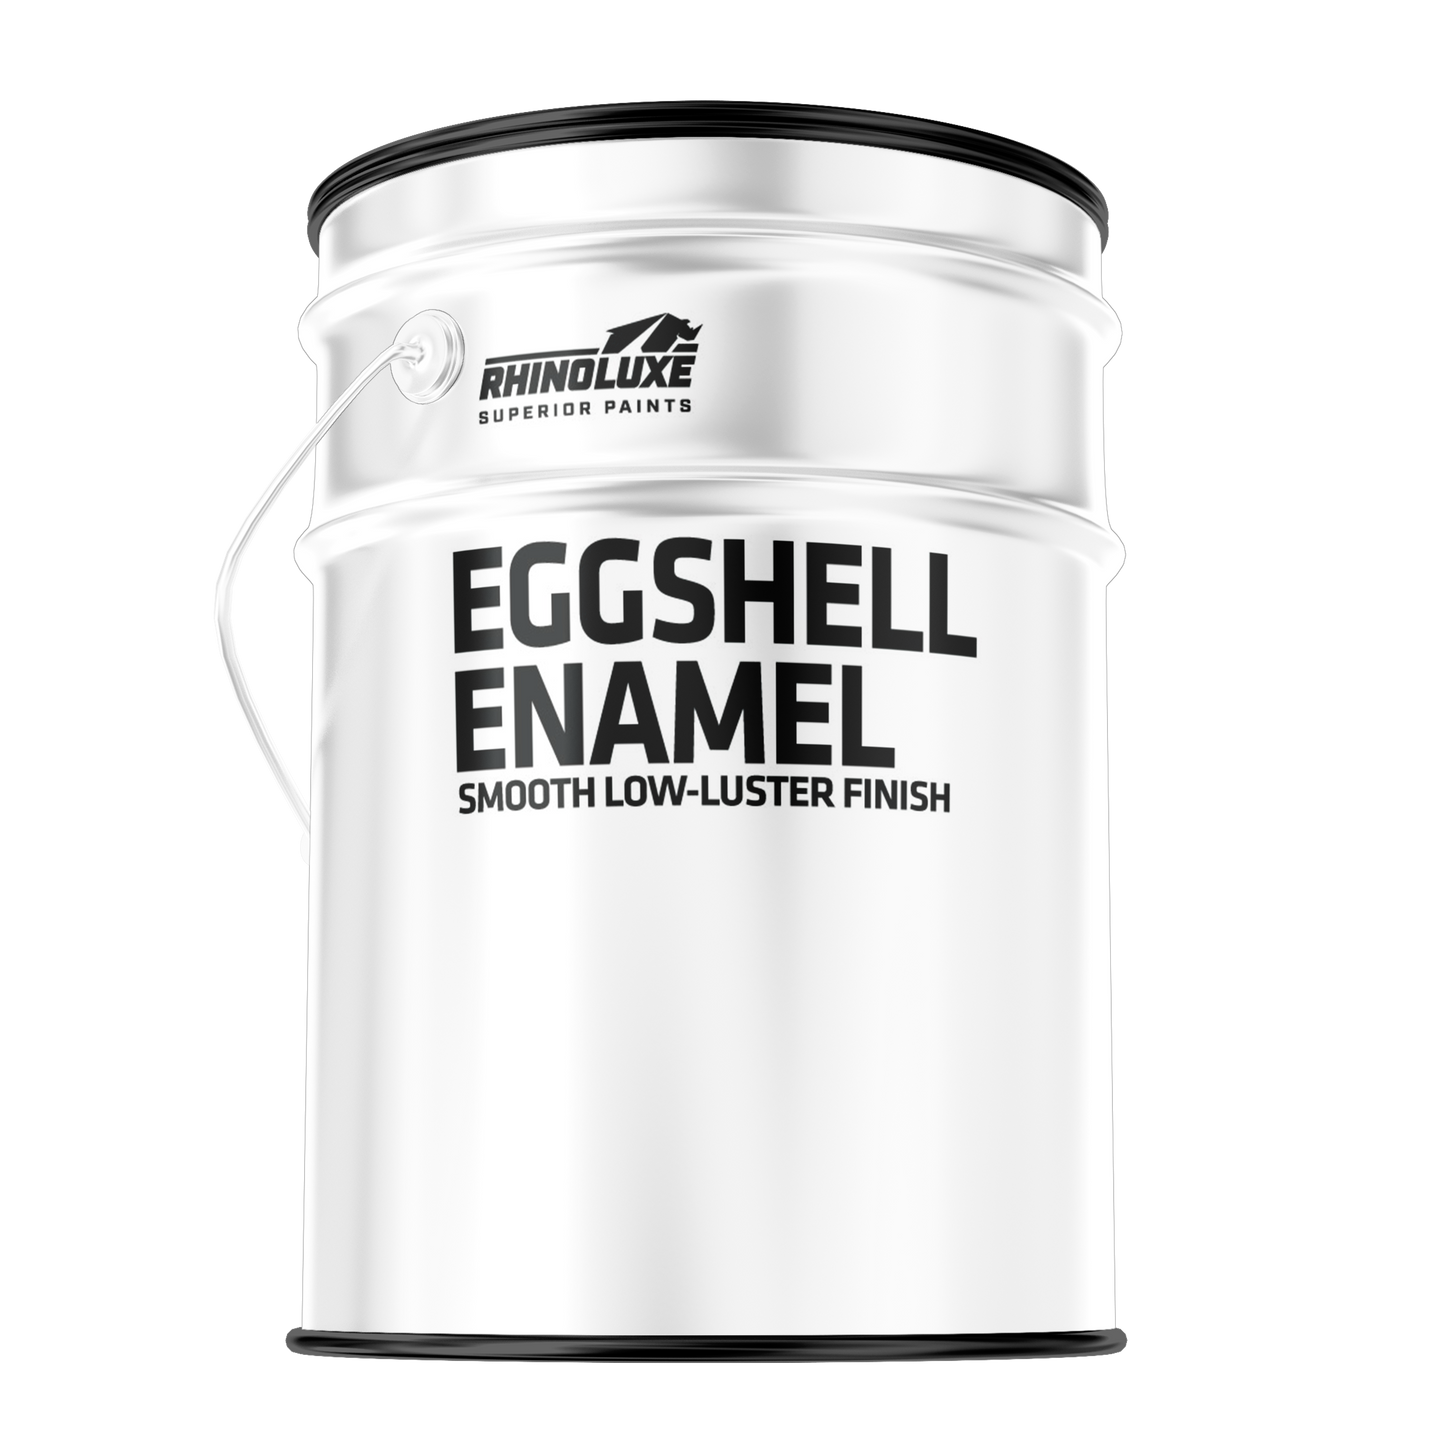 Eggshell Enamel Paint Solvent Based Low Luster Finish